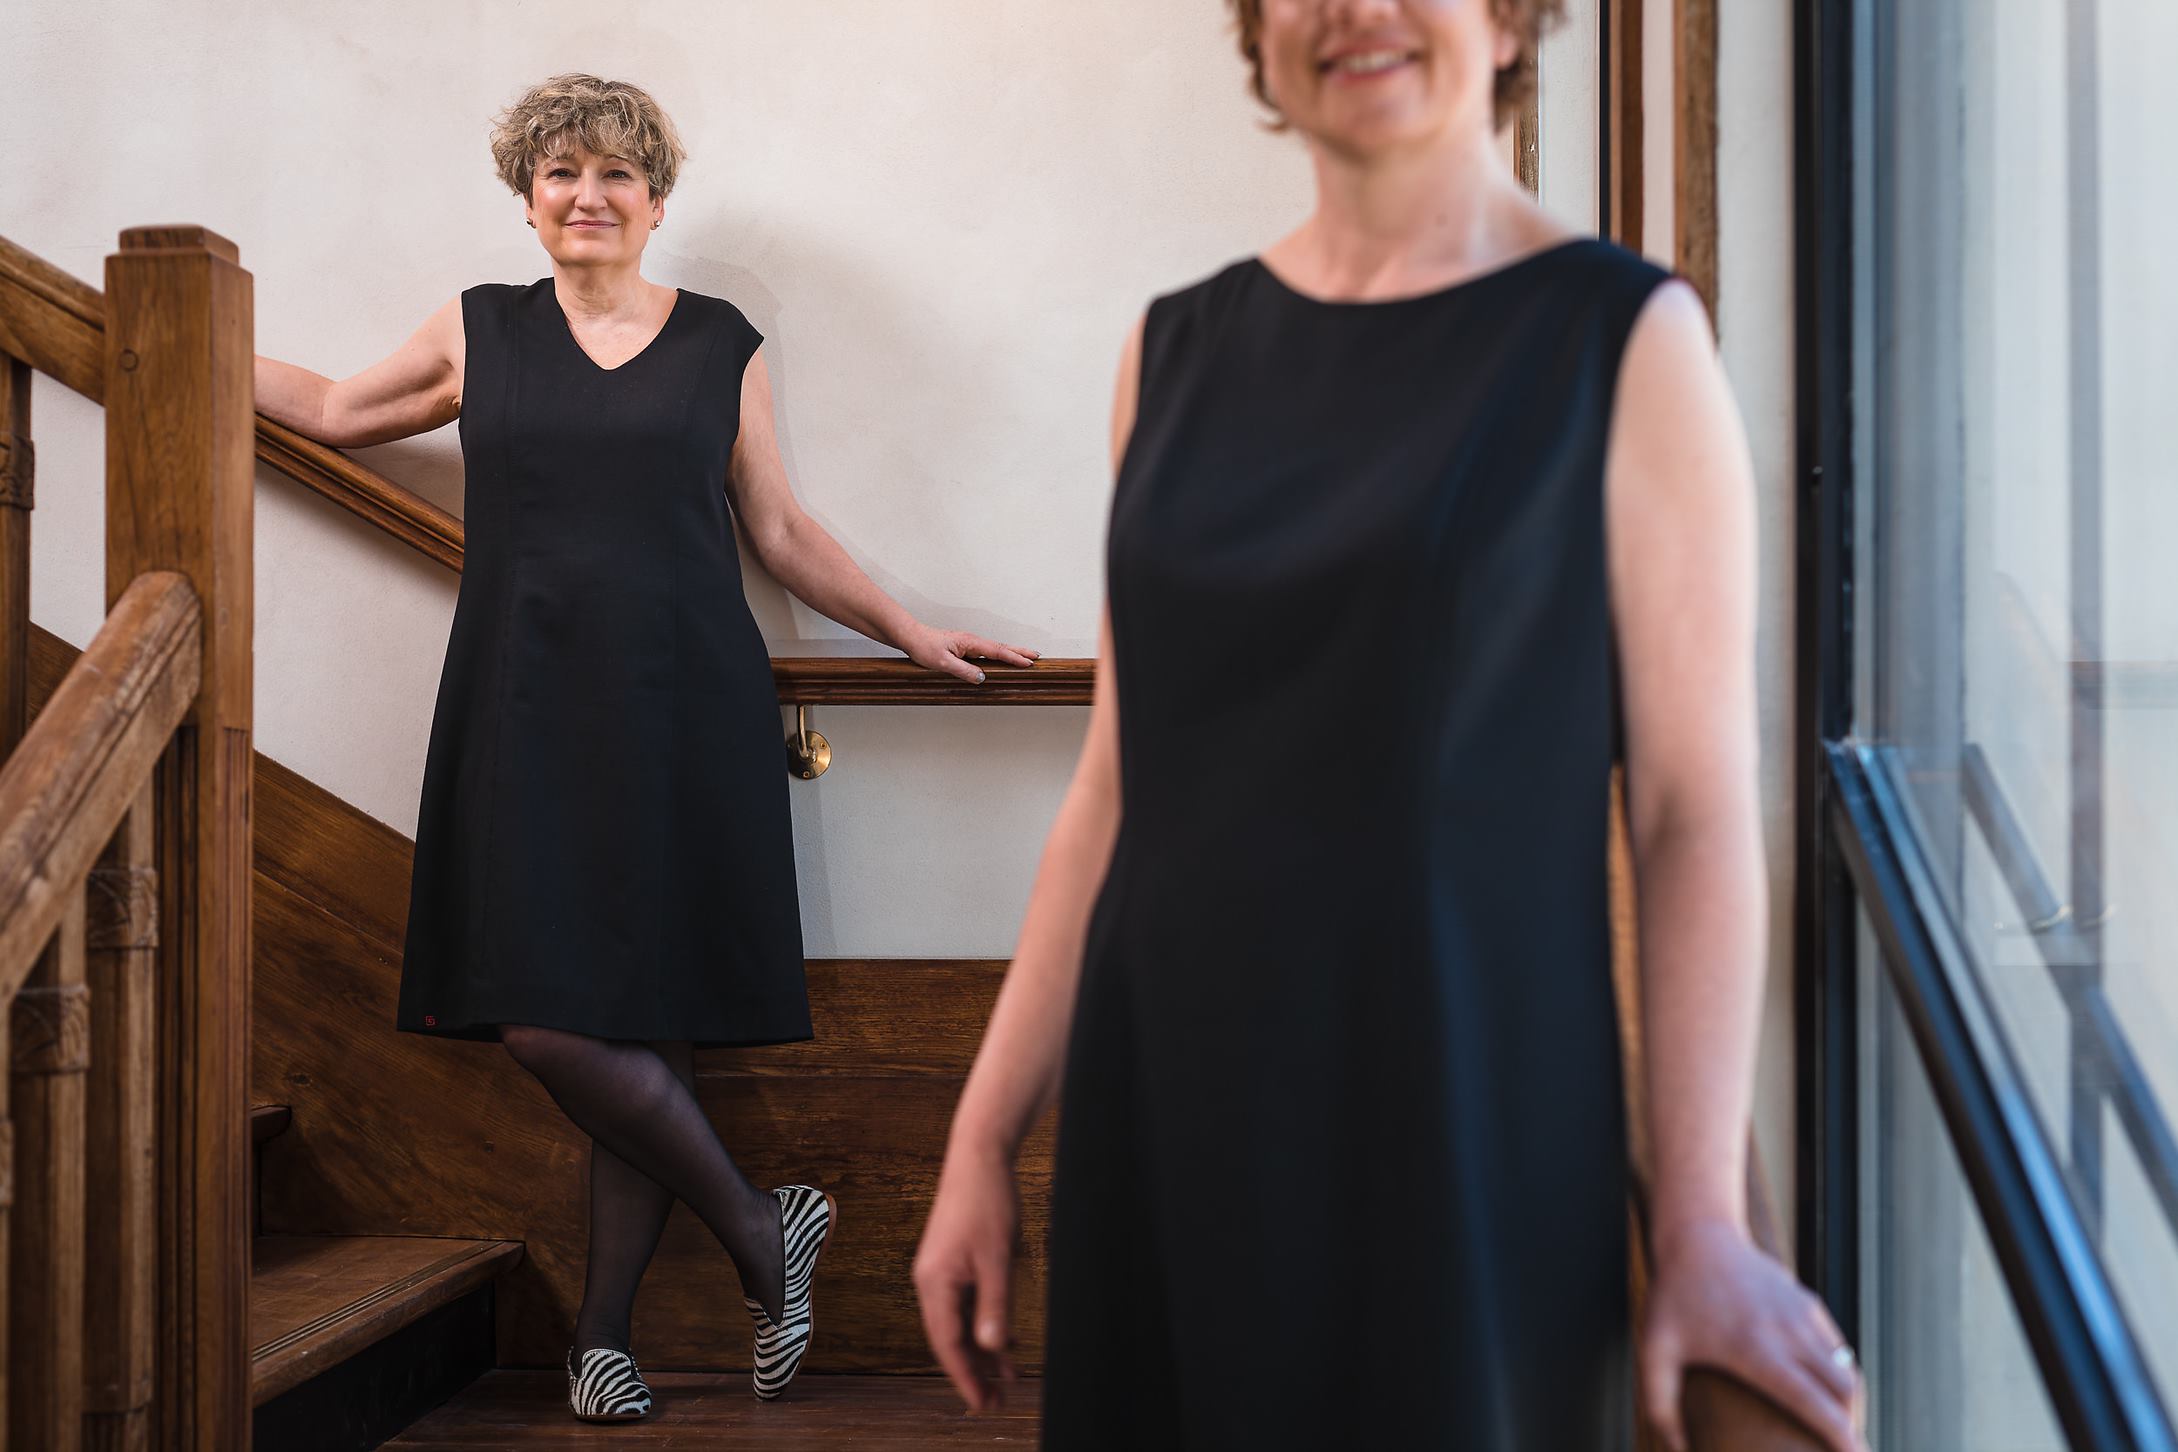 Deux modèles posant dans un escalier en robe sur-mesure et unique Laurence Glorieux.